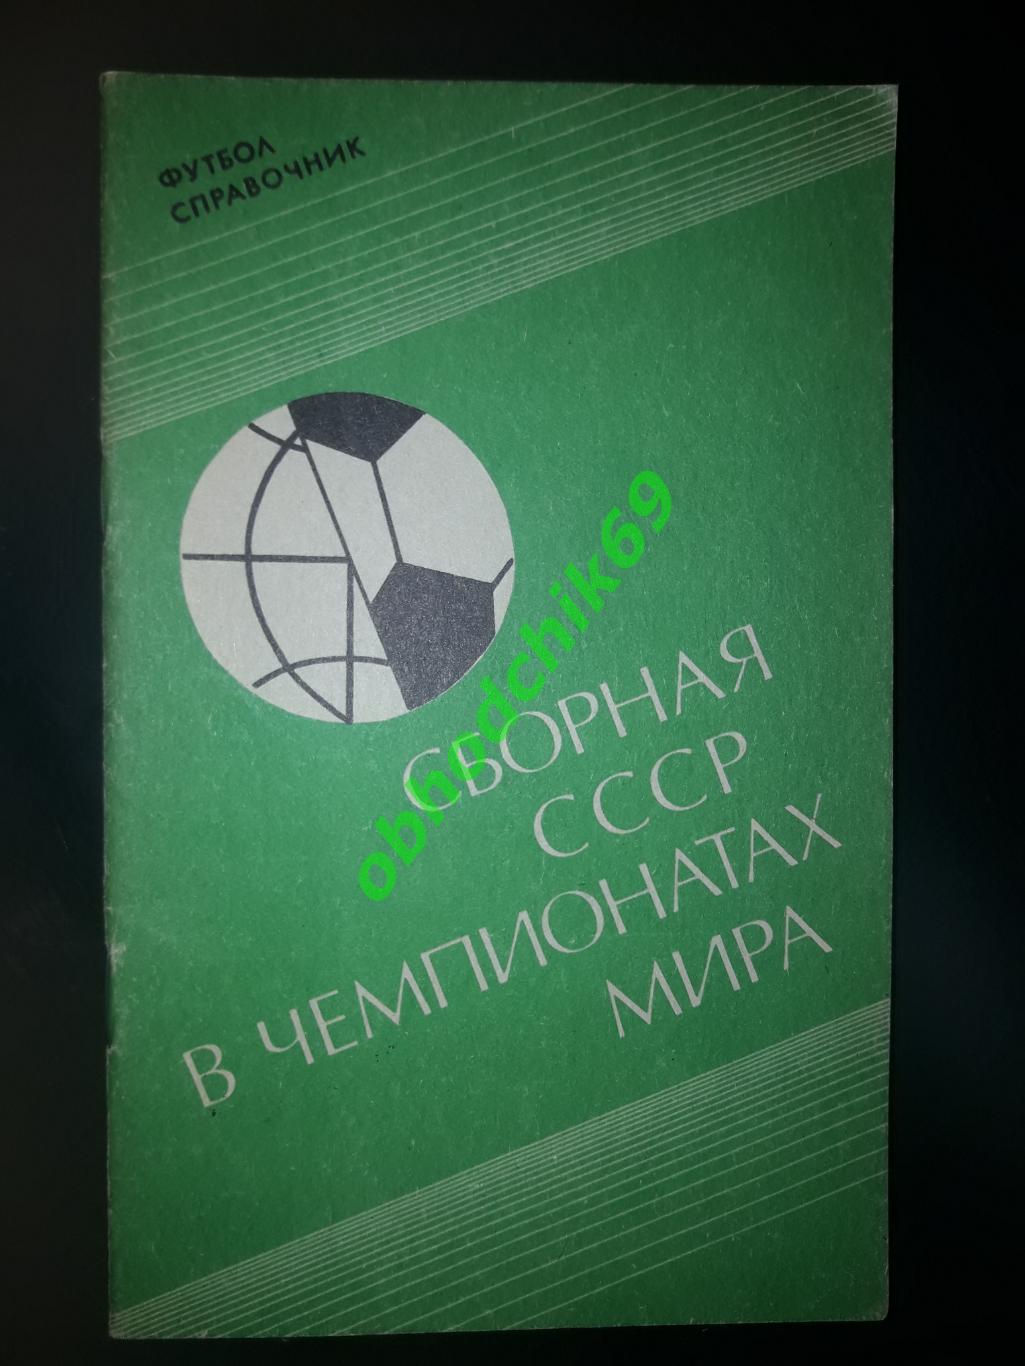 Футбол Сборная СССРв чемпионатах мира_1991